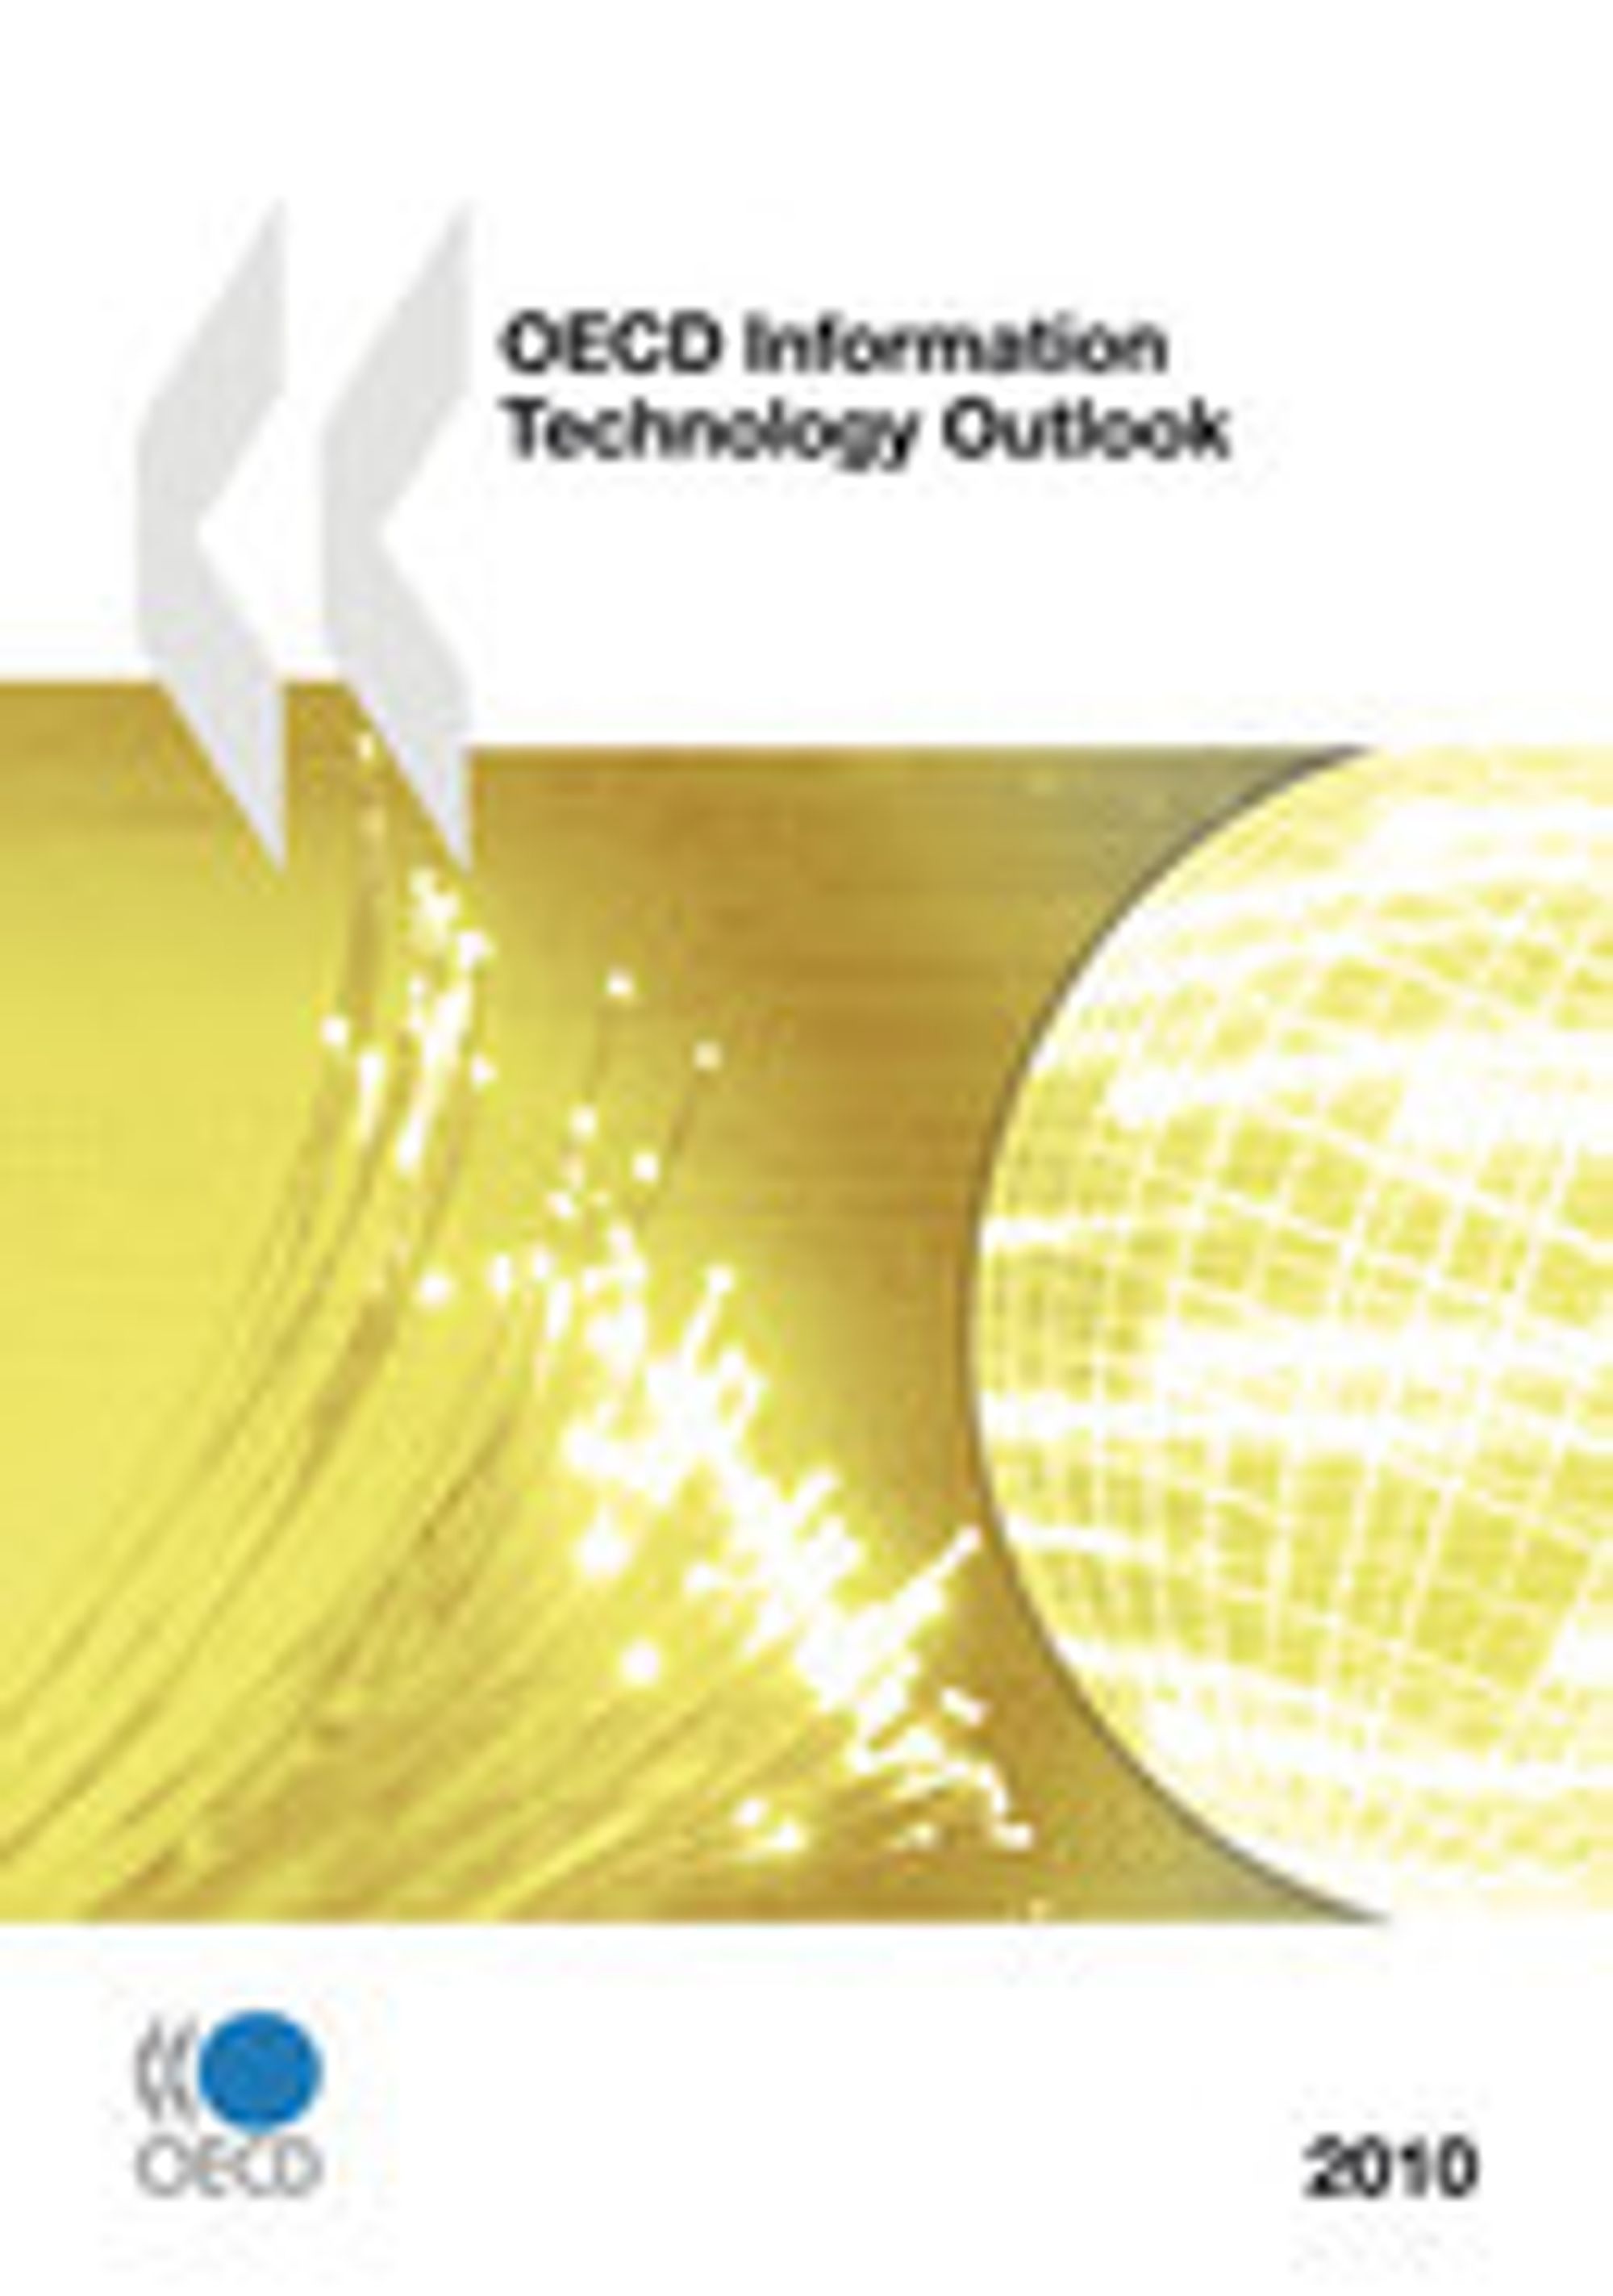 En 11 siders oppsummering av OECD Information Technology Outlook 2010 kan lastes ned gratis.